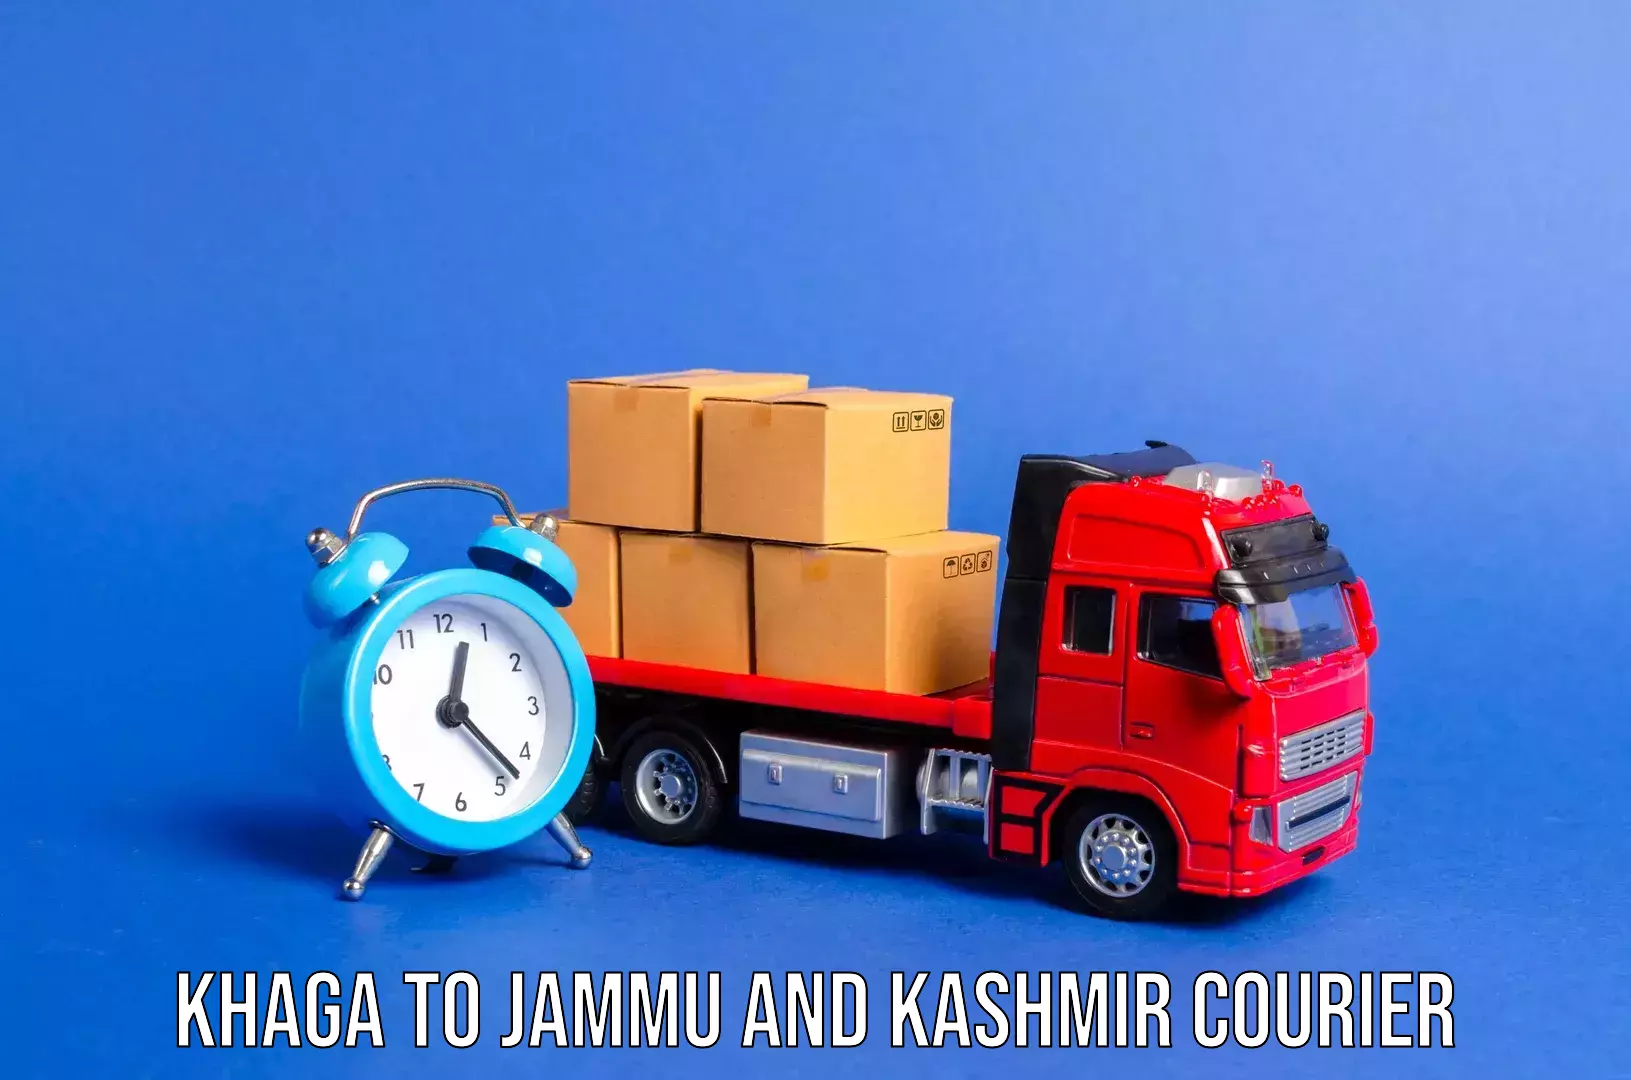 Luggage shipment specialists Khaga to University of Jammu